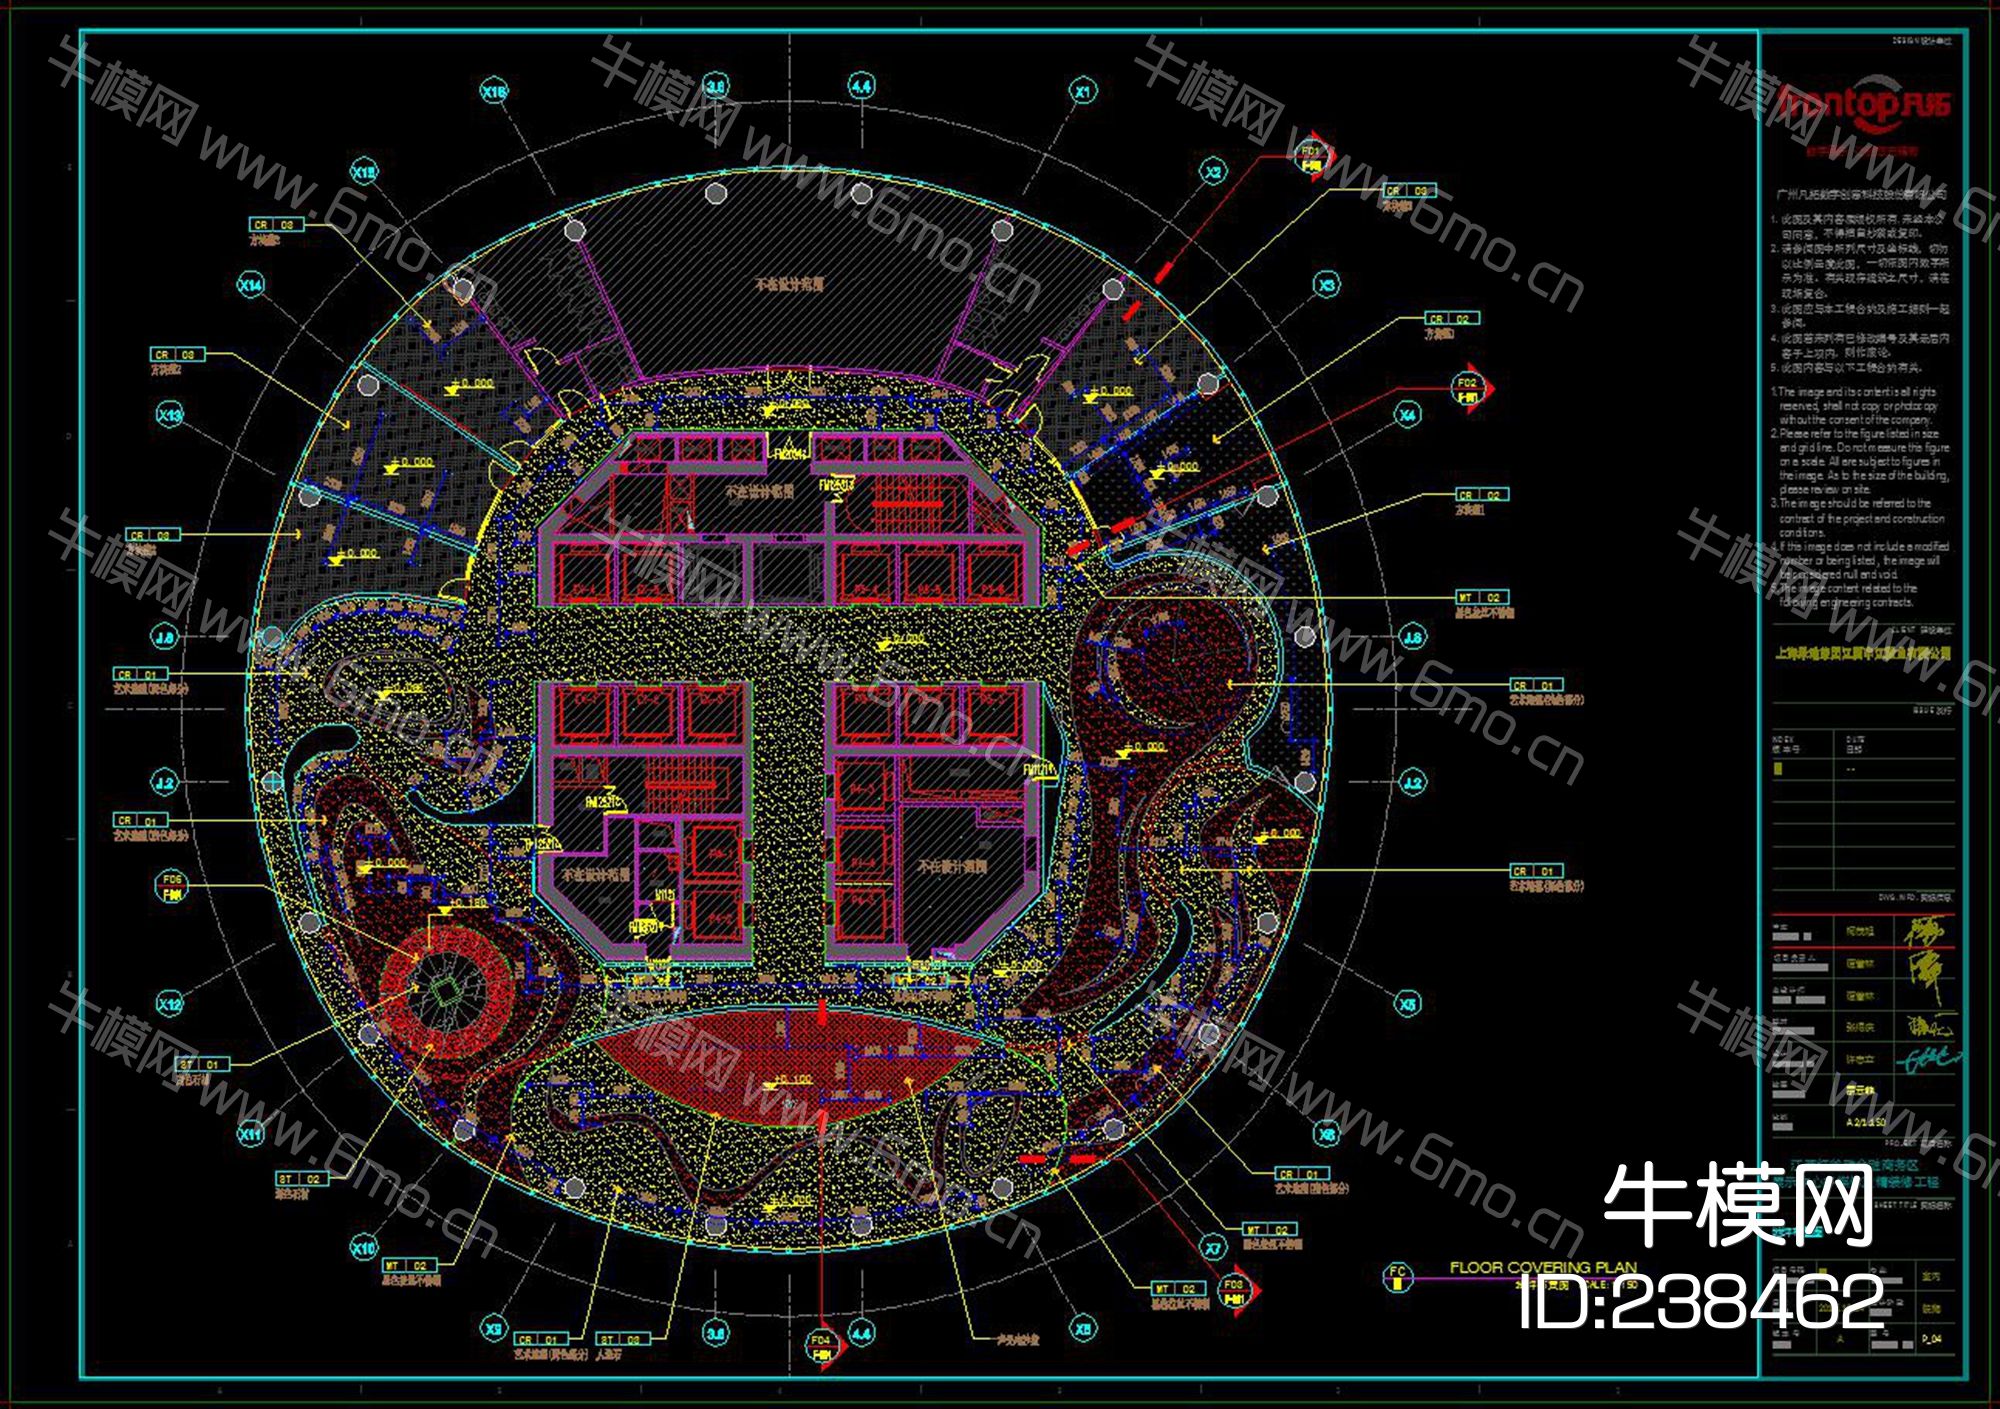 红谷滩金融商务区展示中心施工图效果图